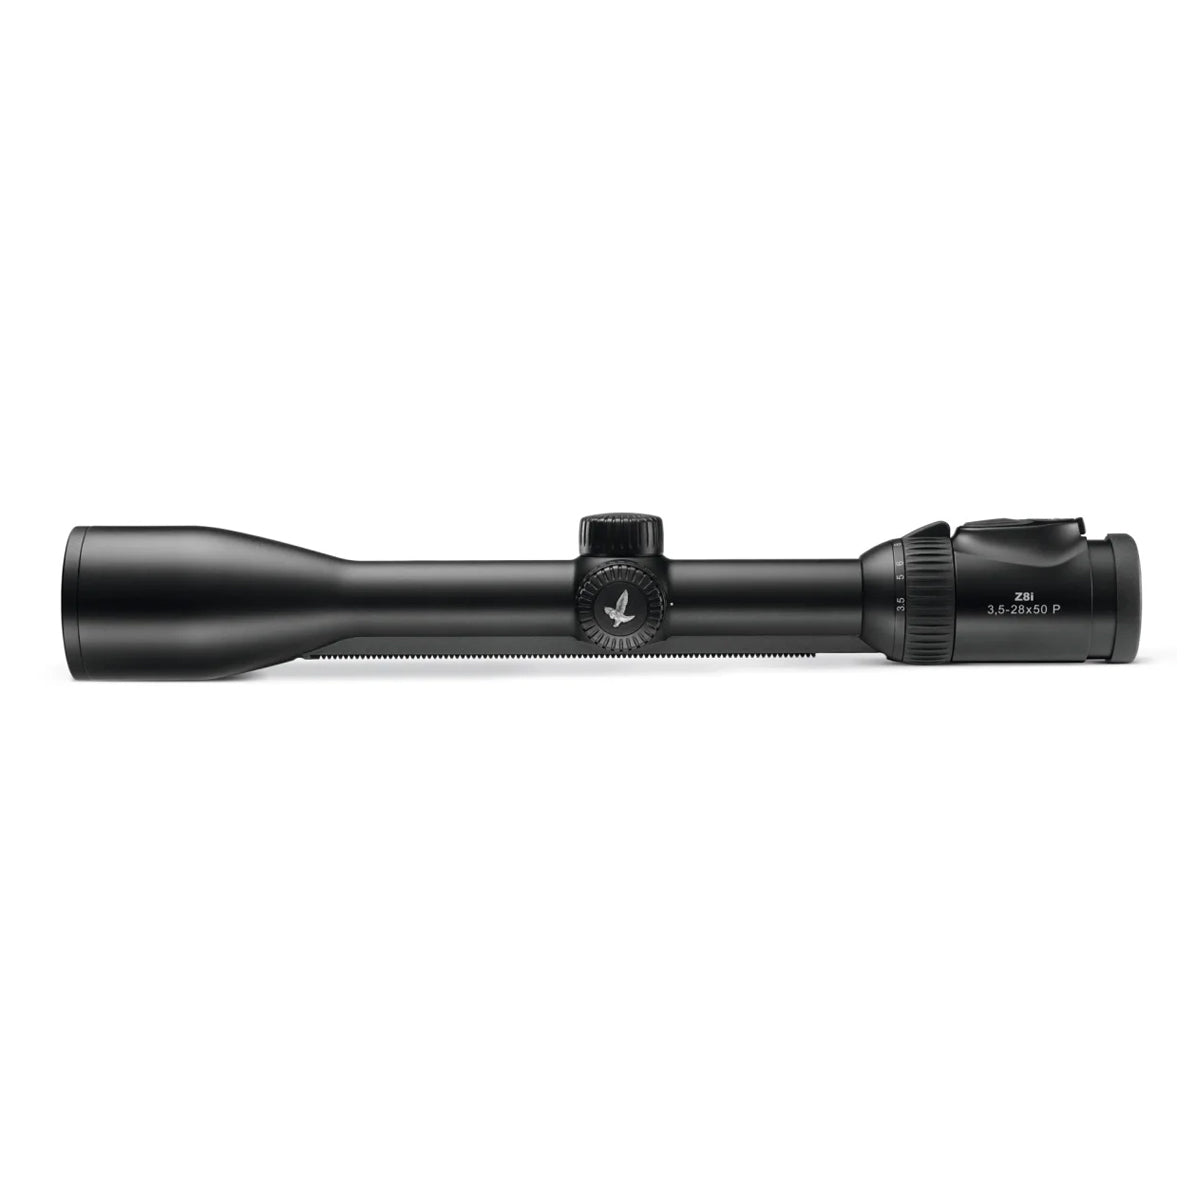 Swarovski Z8i 3.5-28x50 4W-I Riflescope